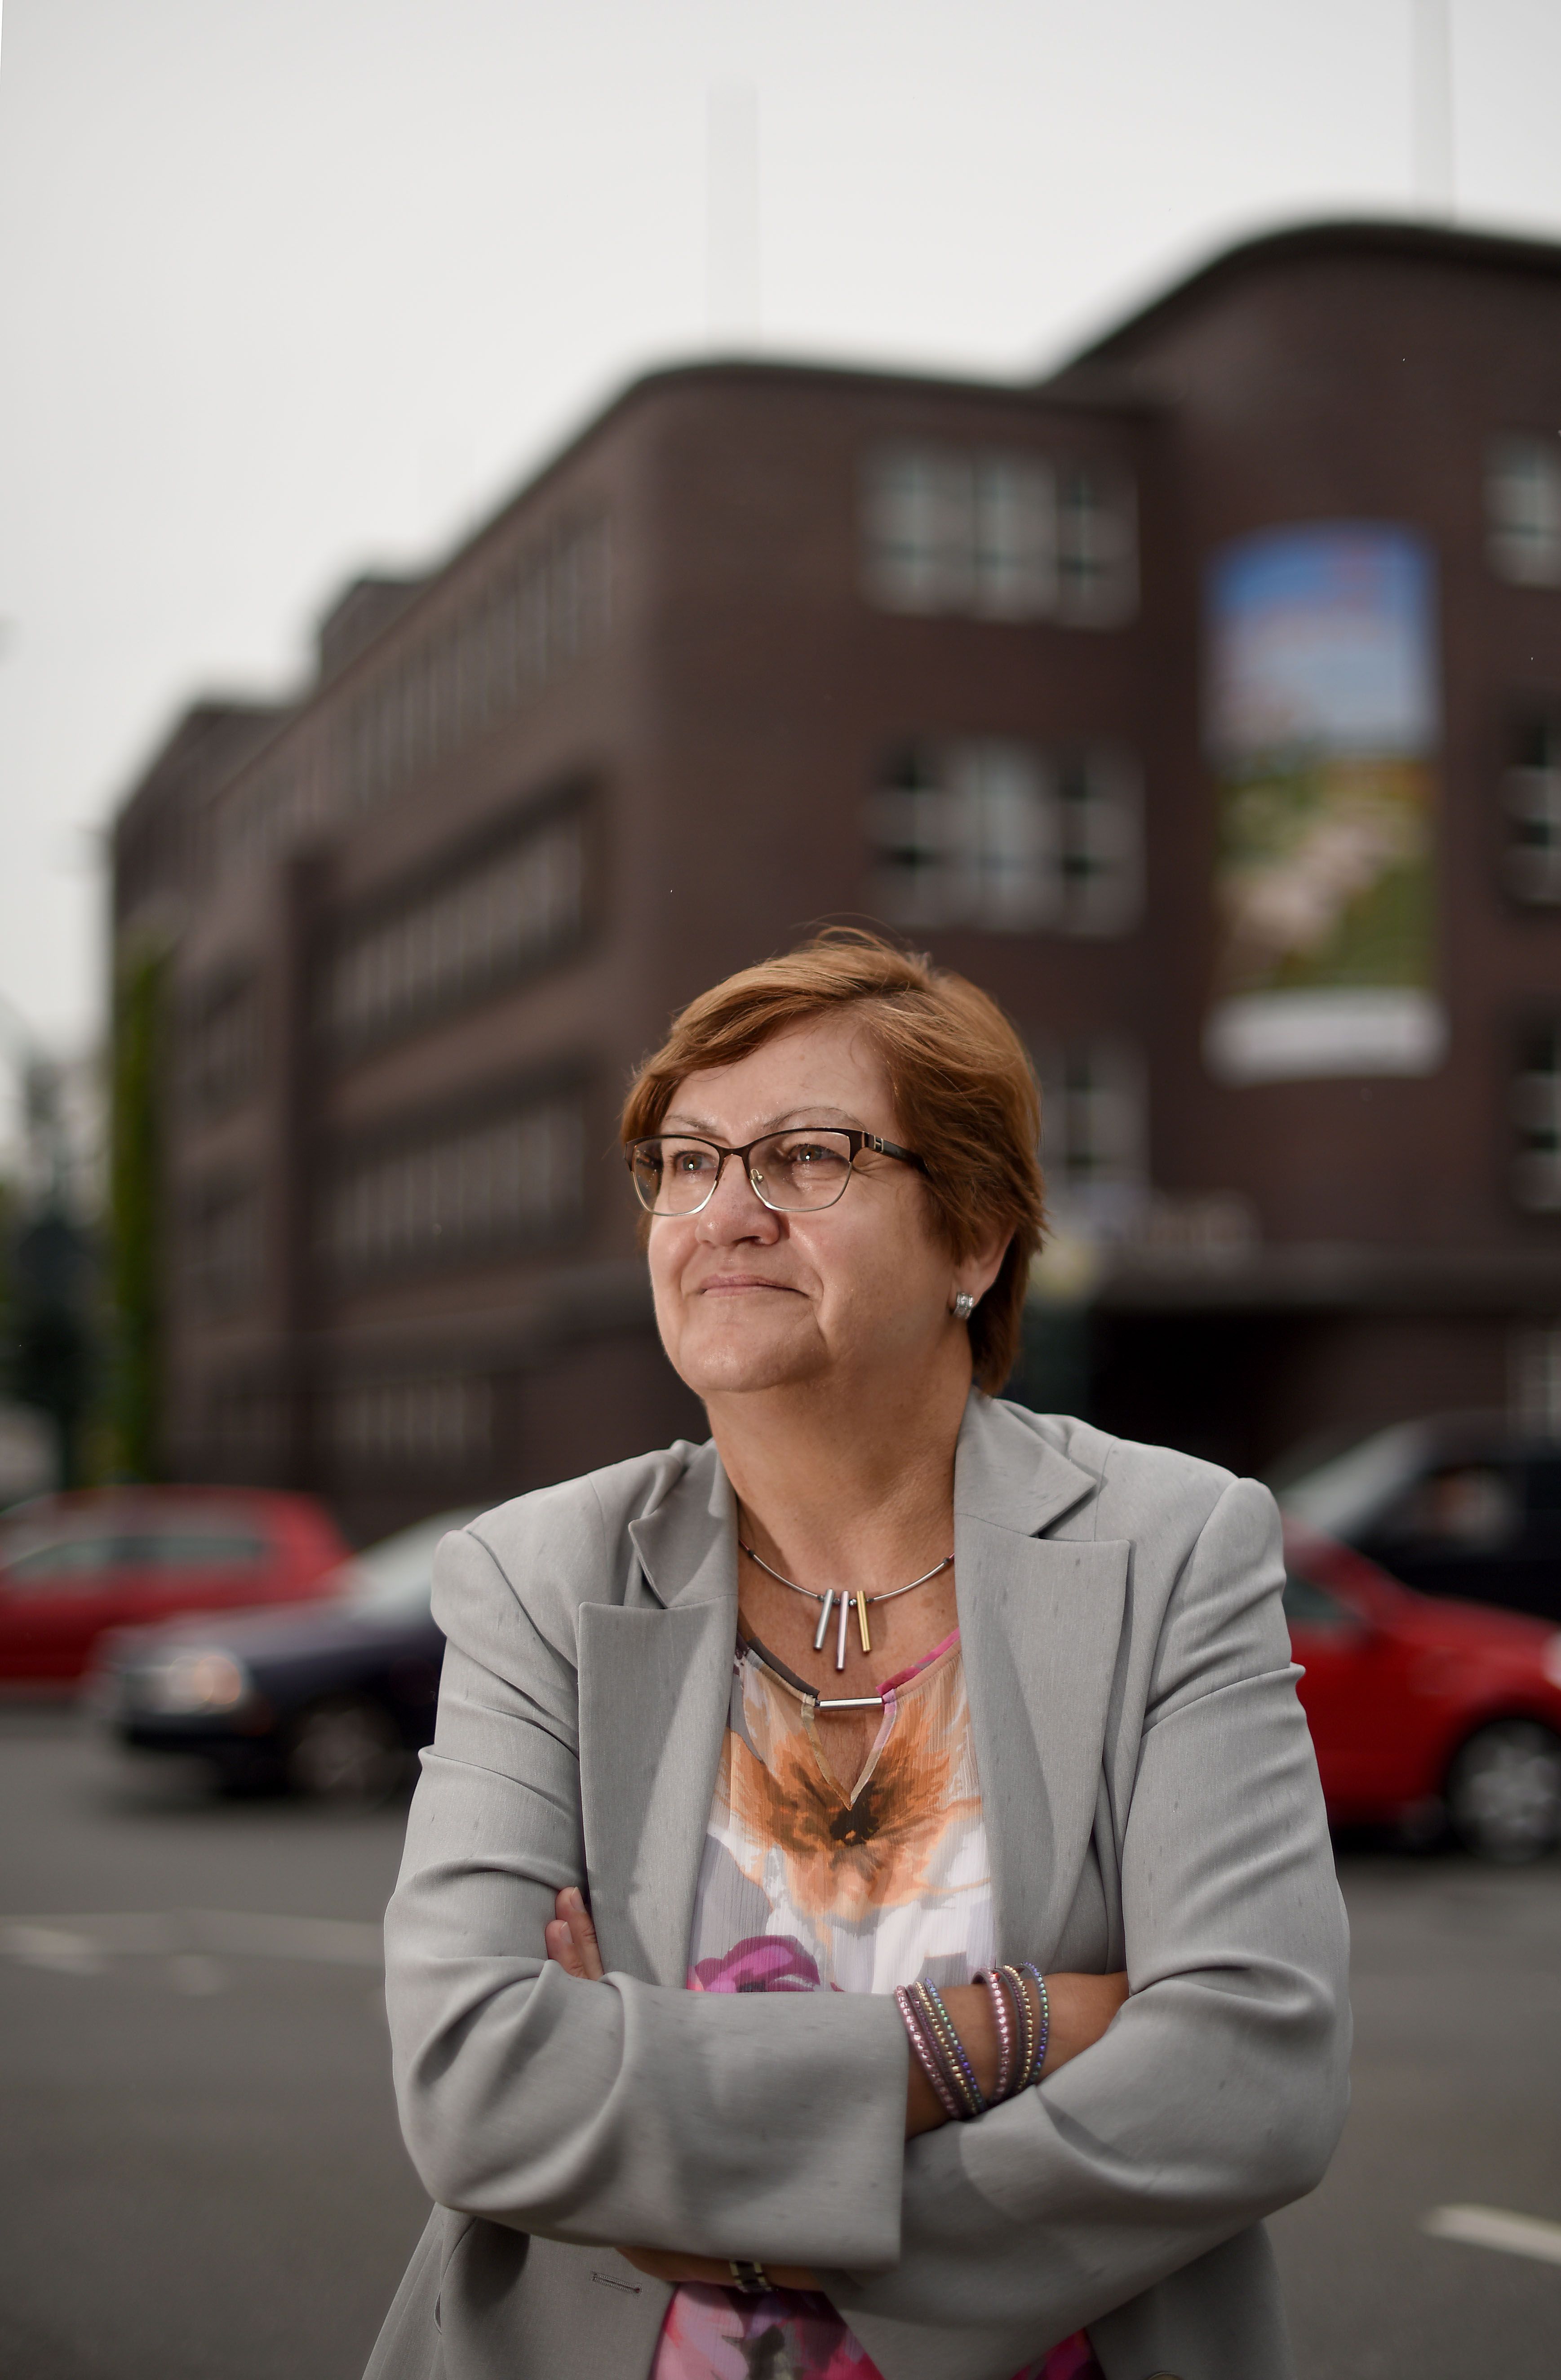 Das Mitarbeiterportrait in Hochformat vor dem RVR Verbandsgebäude in Essen zeigt die RVR Regionaldirektorin und Verbandsleiterin Karola Geiß-Netthöfel.